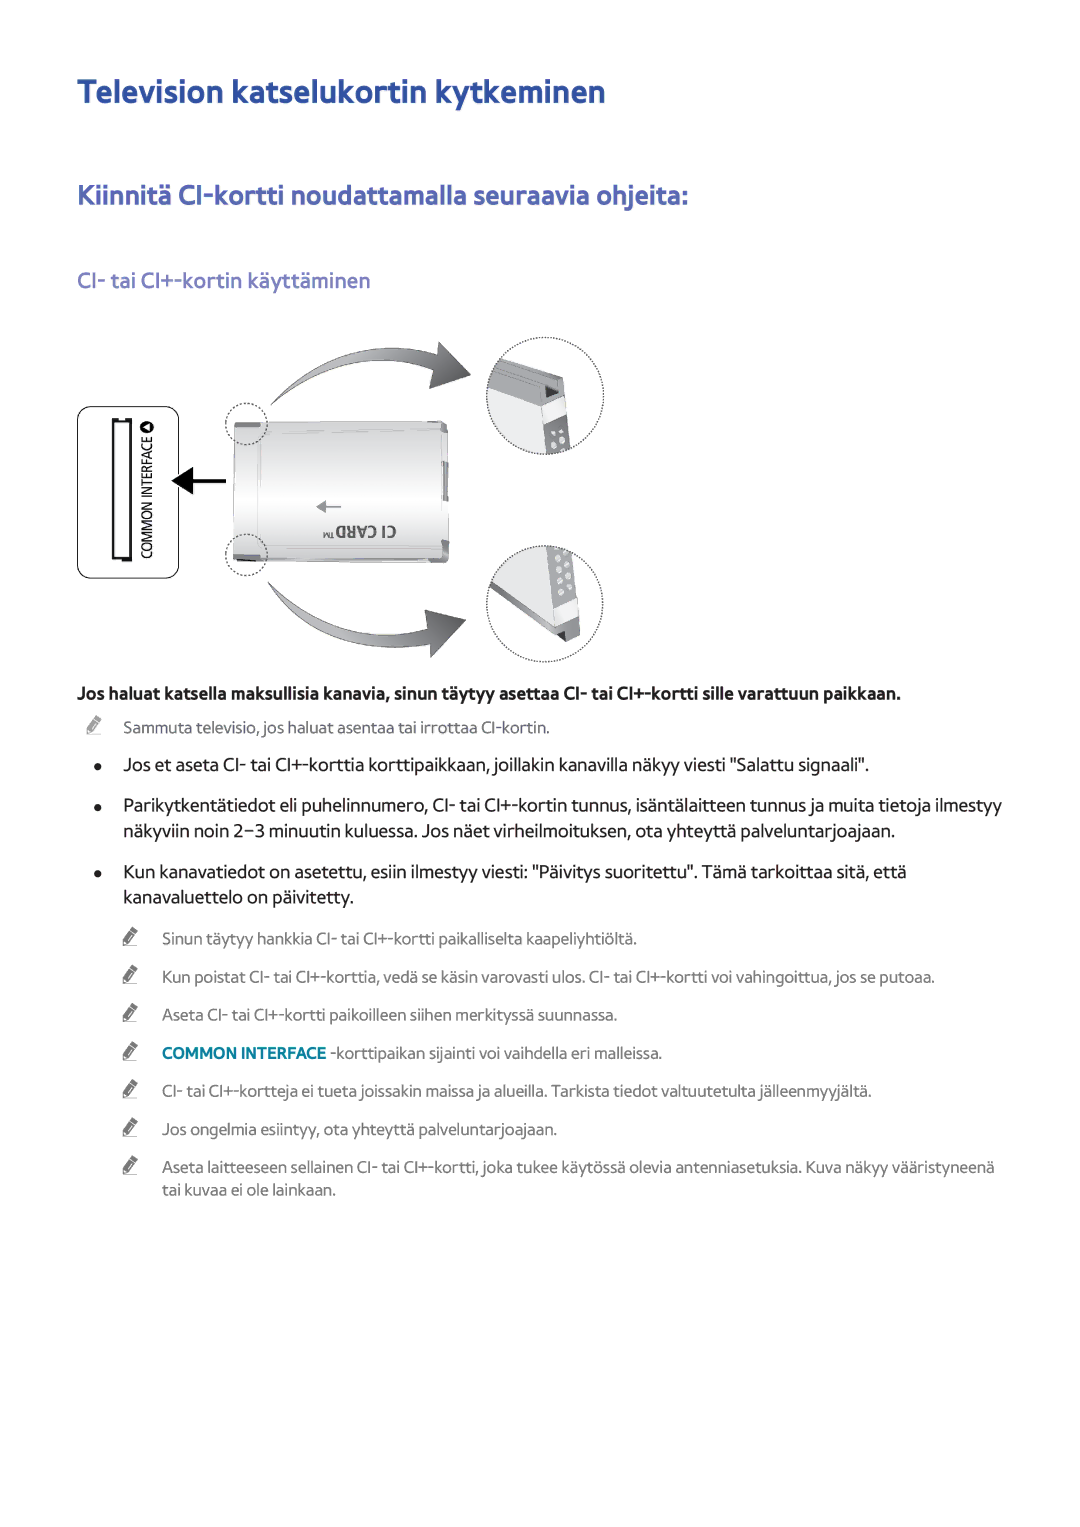 Samsung UE55F9005STXXE manual Television katselukortin kytkeminen, Kiinnitä CI-kortti noudattamalla seuraavia ohjeita 